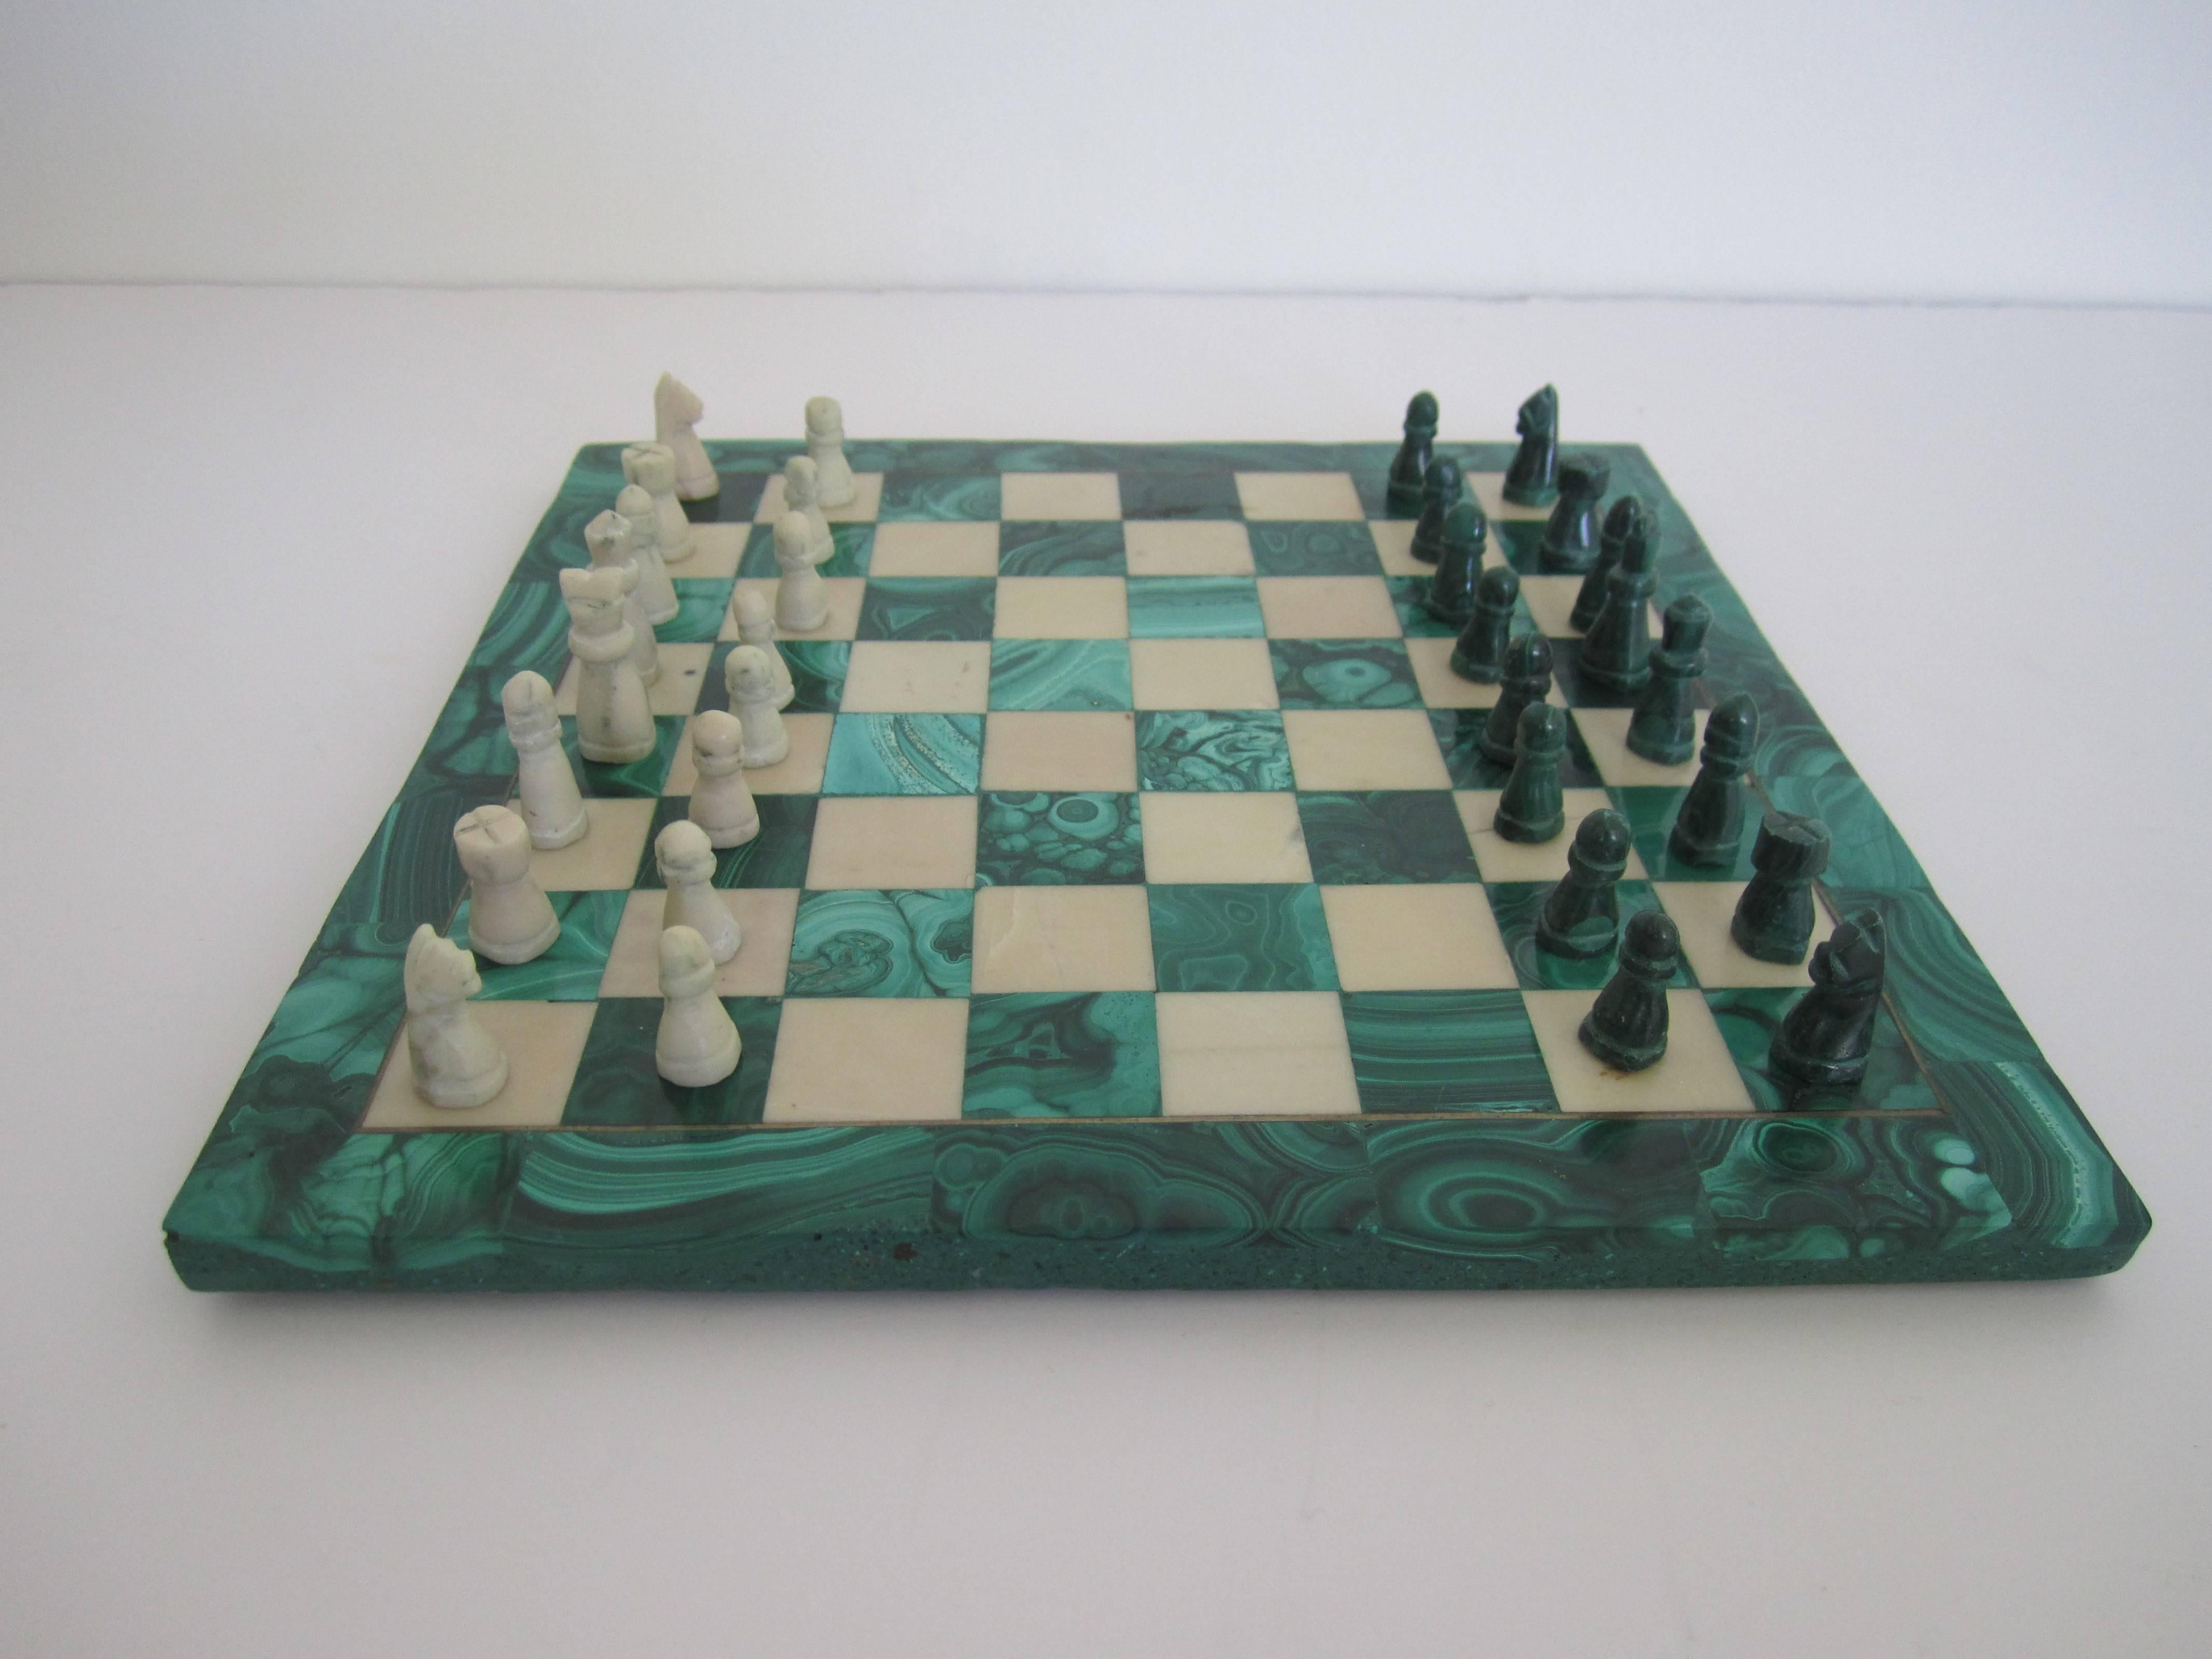 Un jeu d'échecs vintage en malachite verte et marbre. Le plateau de jeu est fait de malachite verte et de marbre. Les pièces de jeu vertes et blanches sont toutes sculptées à la main. Toutes les pièces sont comptabilisées ; 32 + tableau. La planche